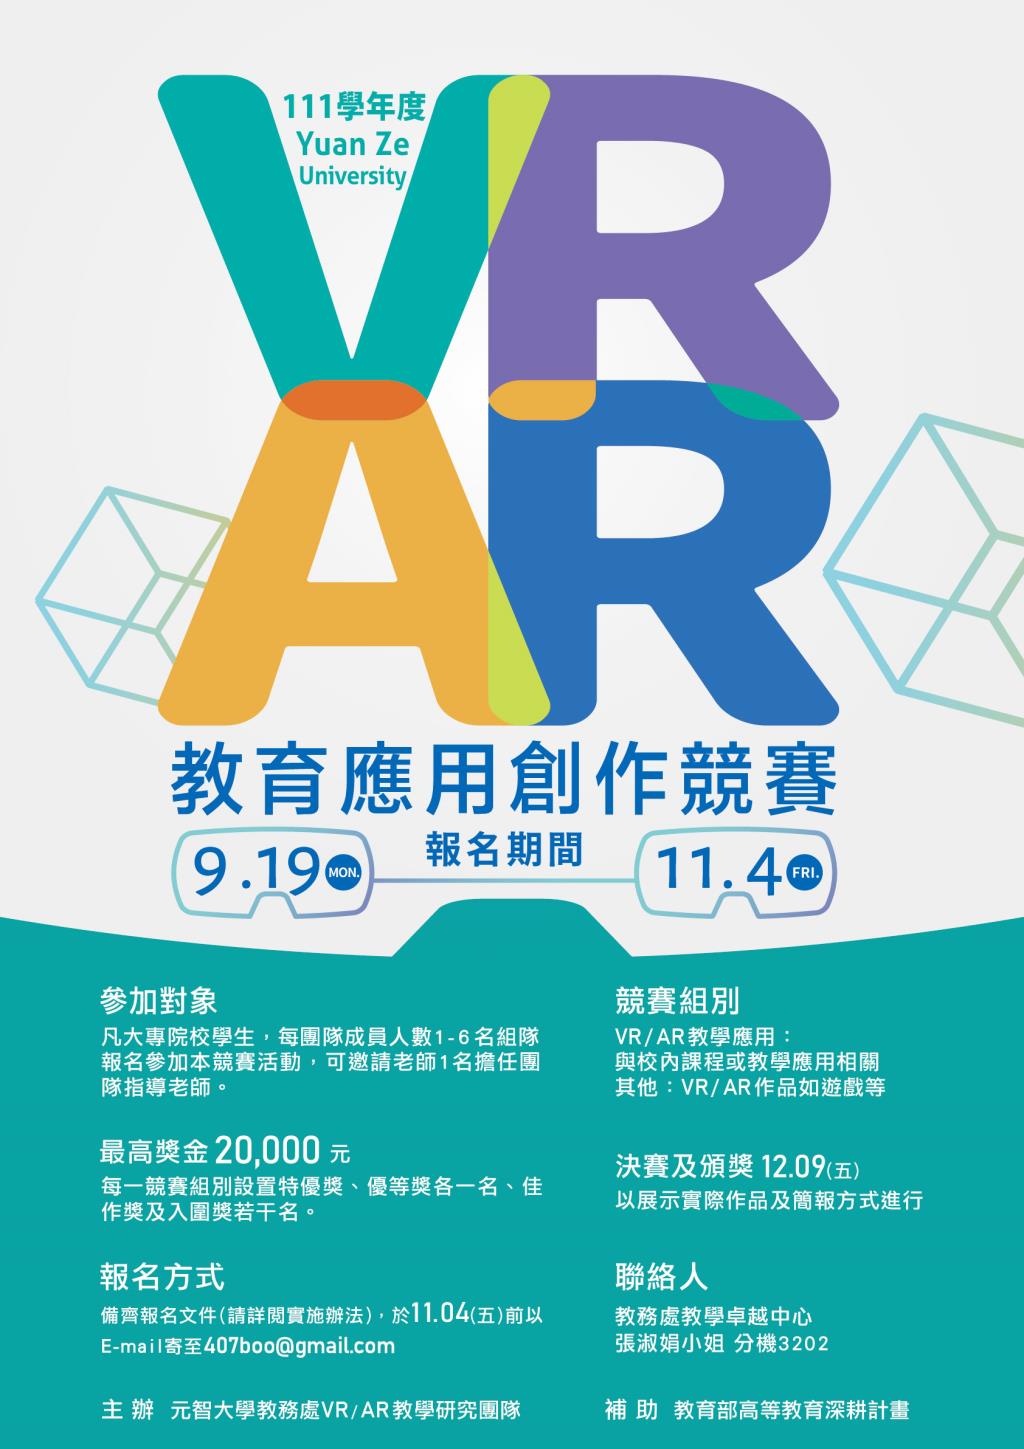 【活動轉知】歡迎踴躍報名參加~元智大學VR/AR教學研究團隊辦理的VR/AR教育應用創作競賽